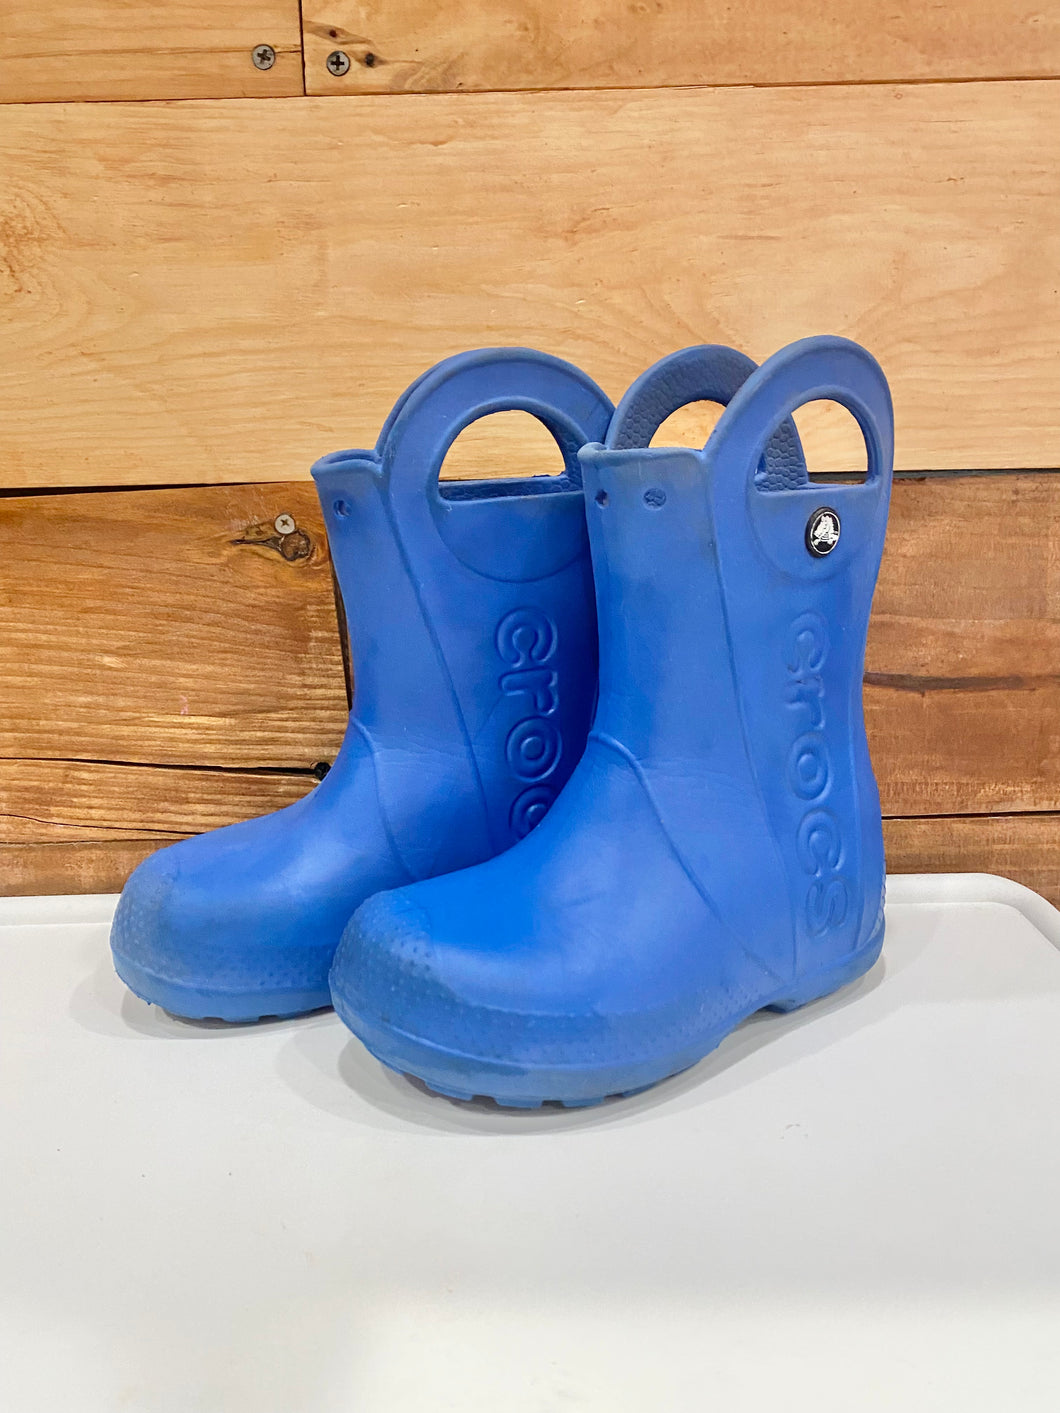 Crocs Blue Boots Size C11